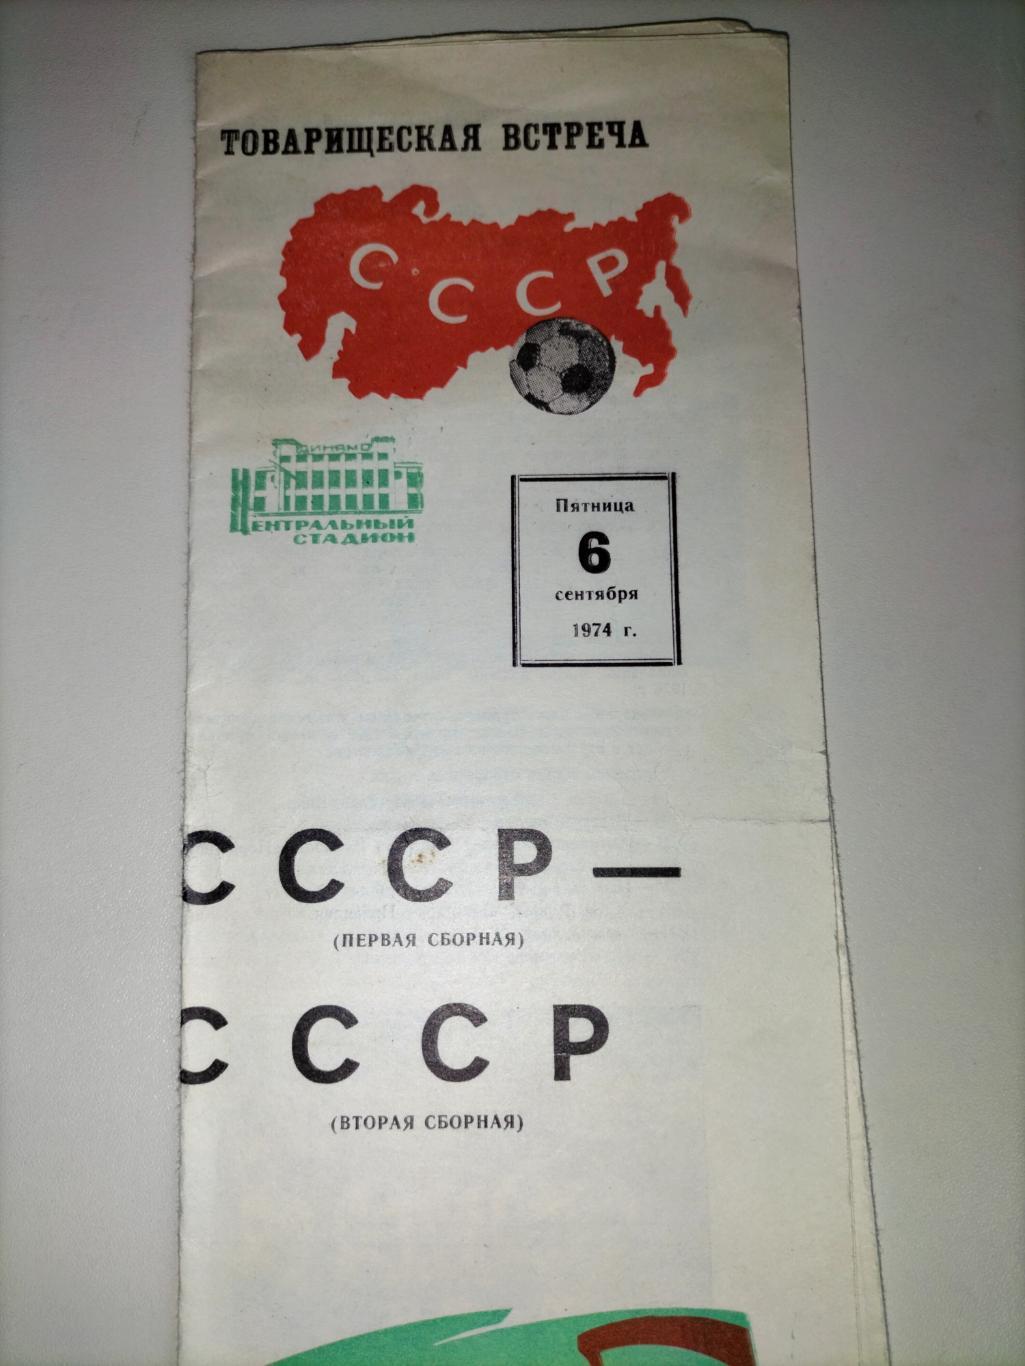 Сборная СССР первая - Сборная СССР вторая 1974 1